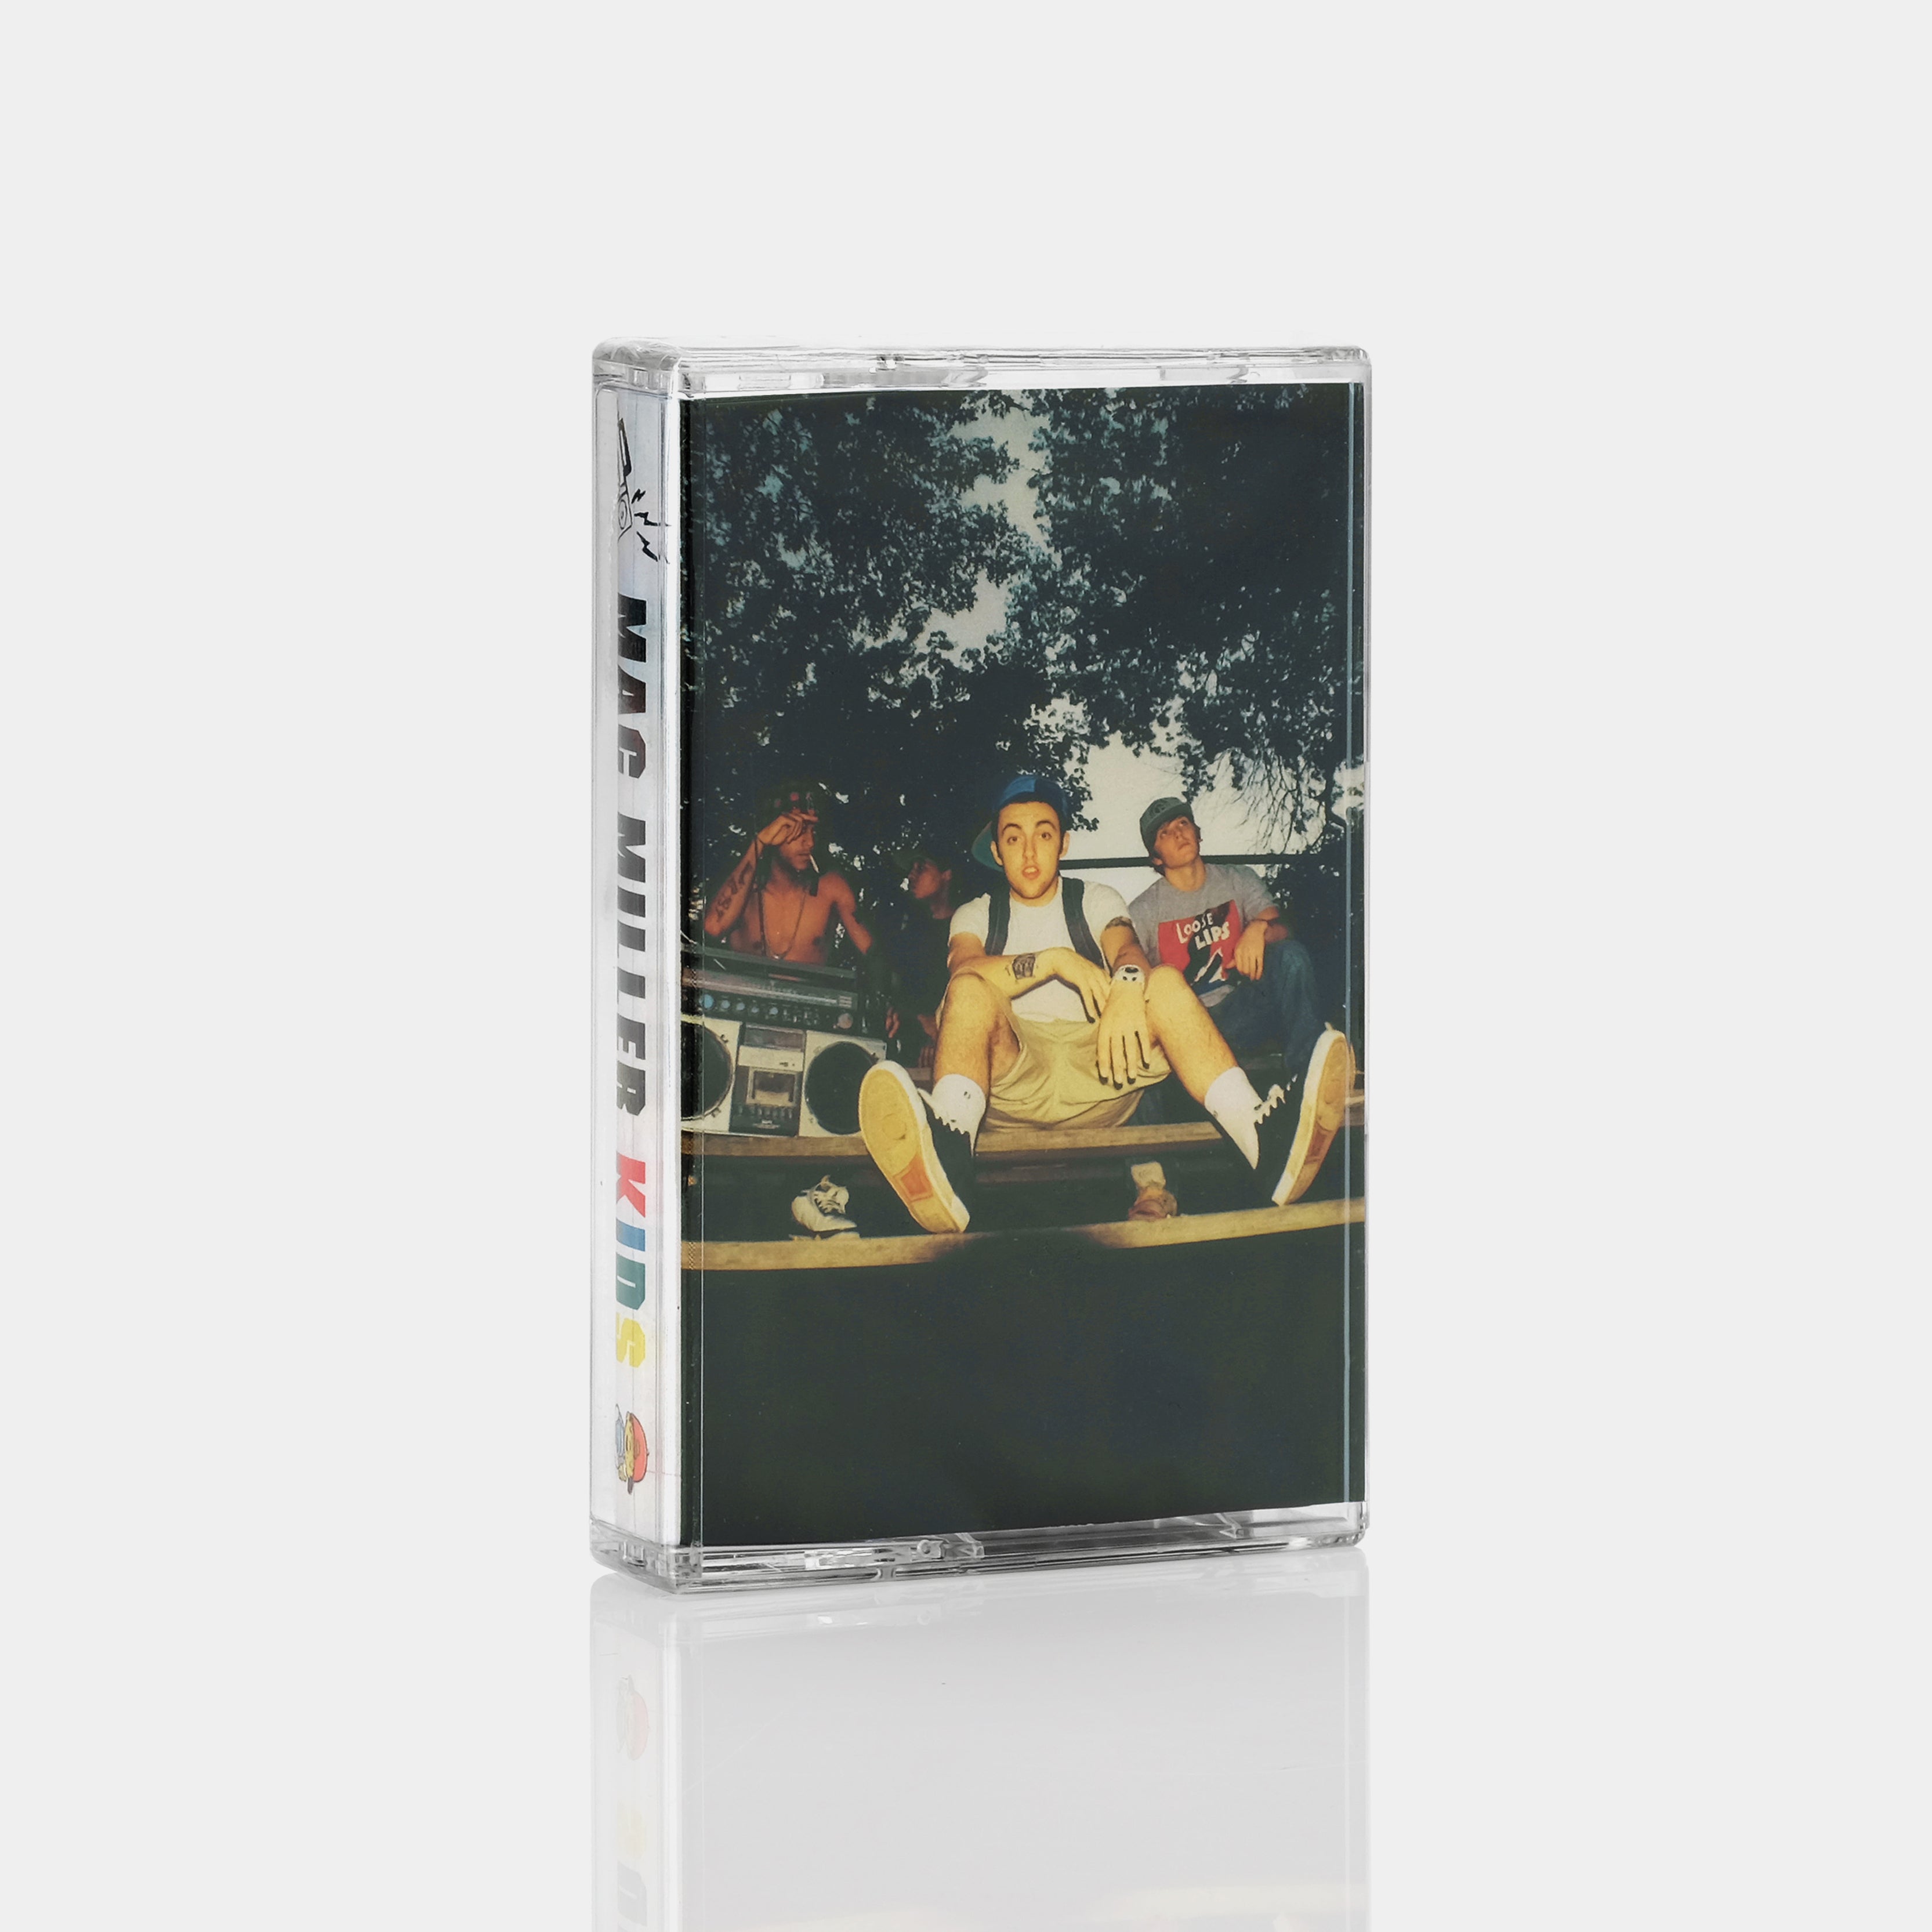 Mac Miller - K.I.D.S. Cassette Tape